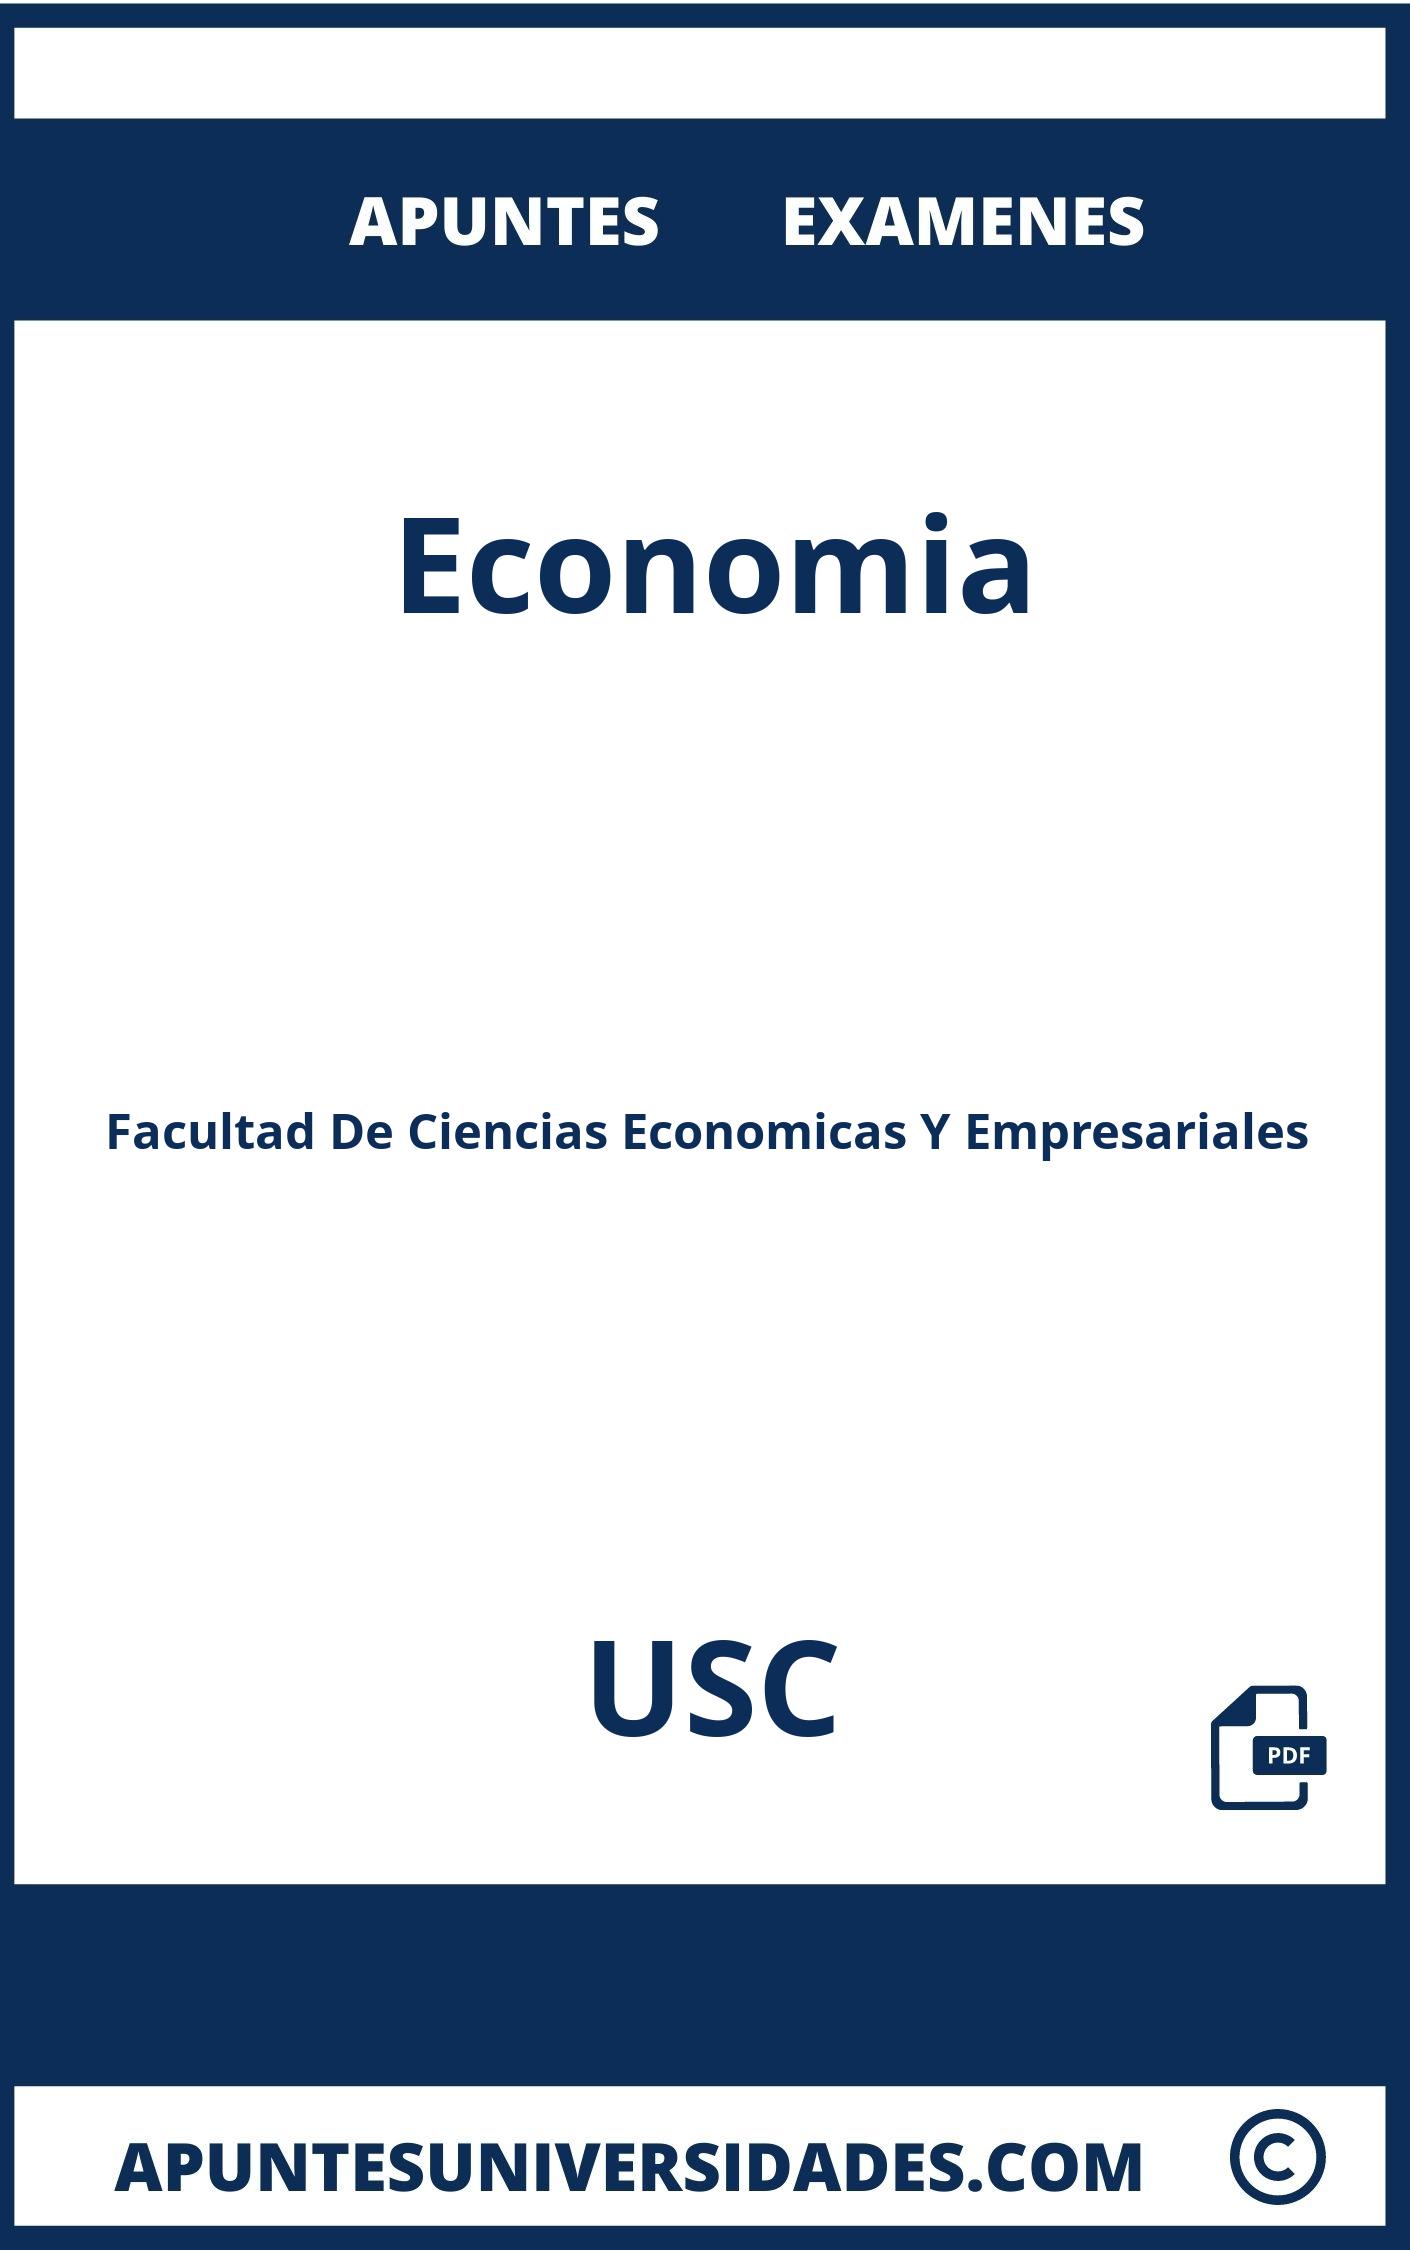 Examenes Economia USC y Apuntes